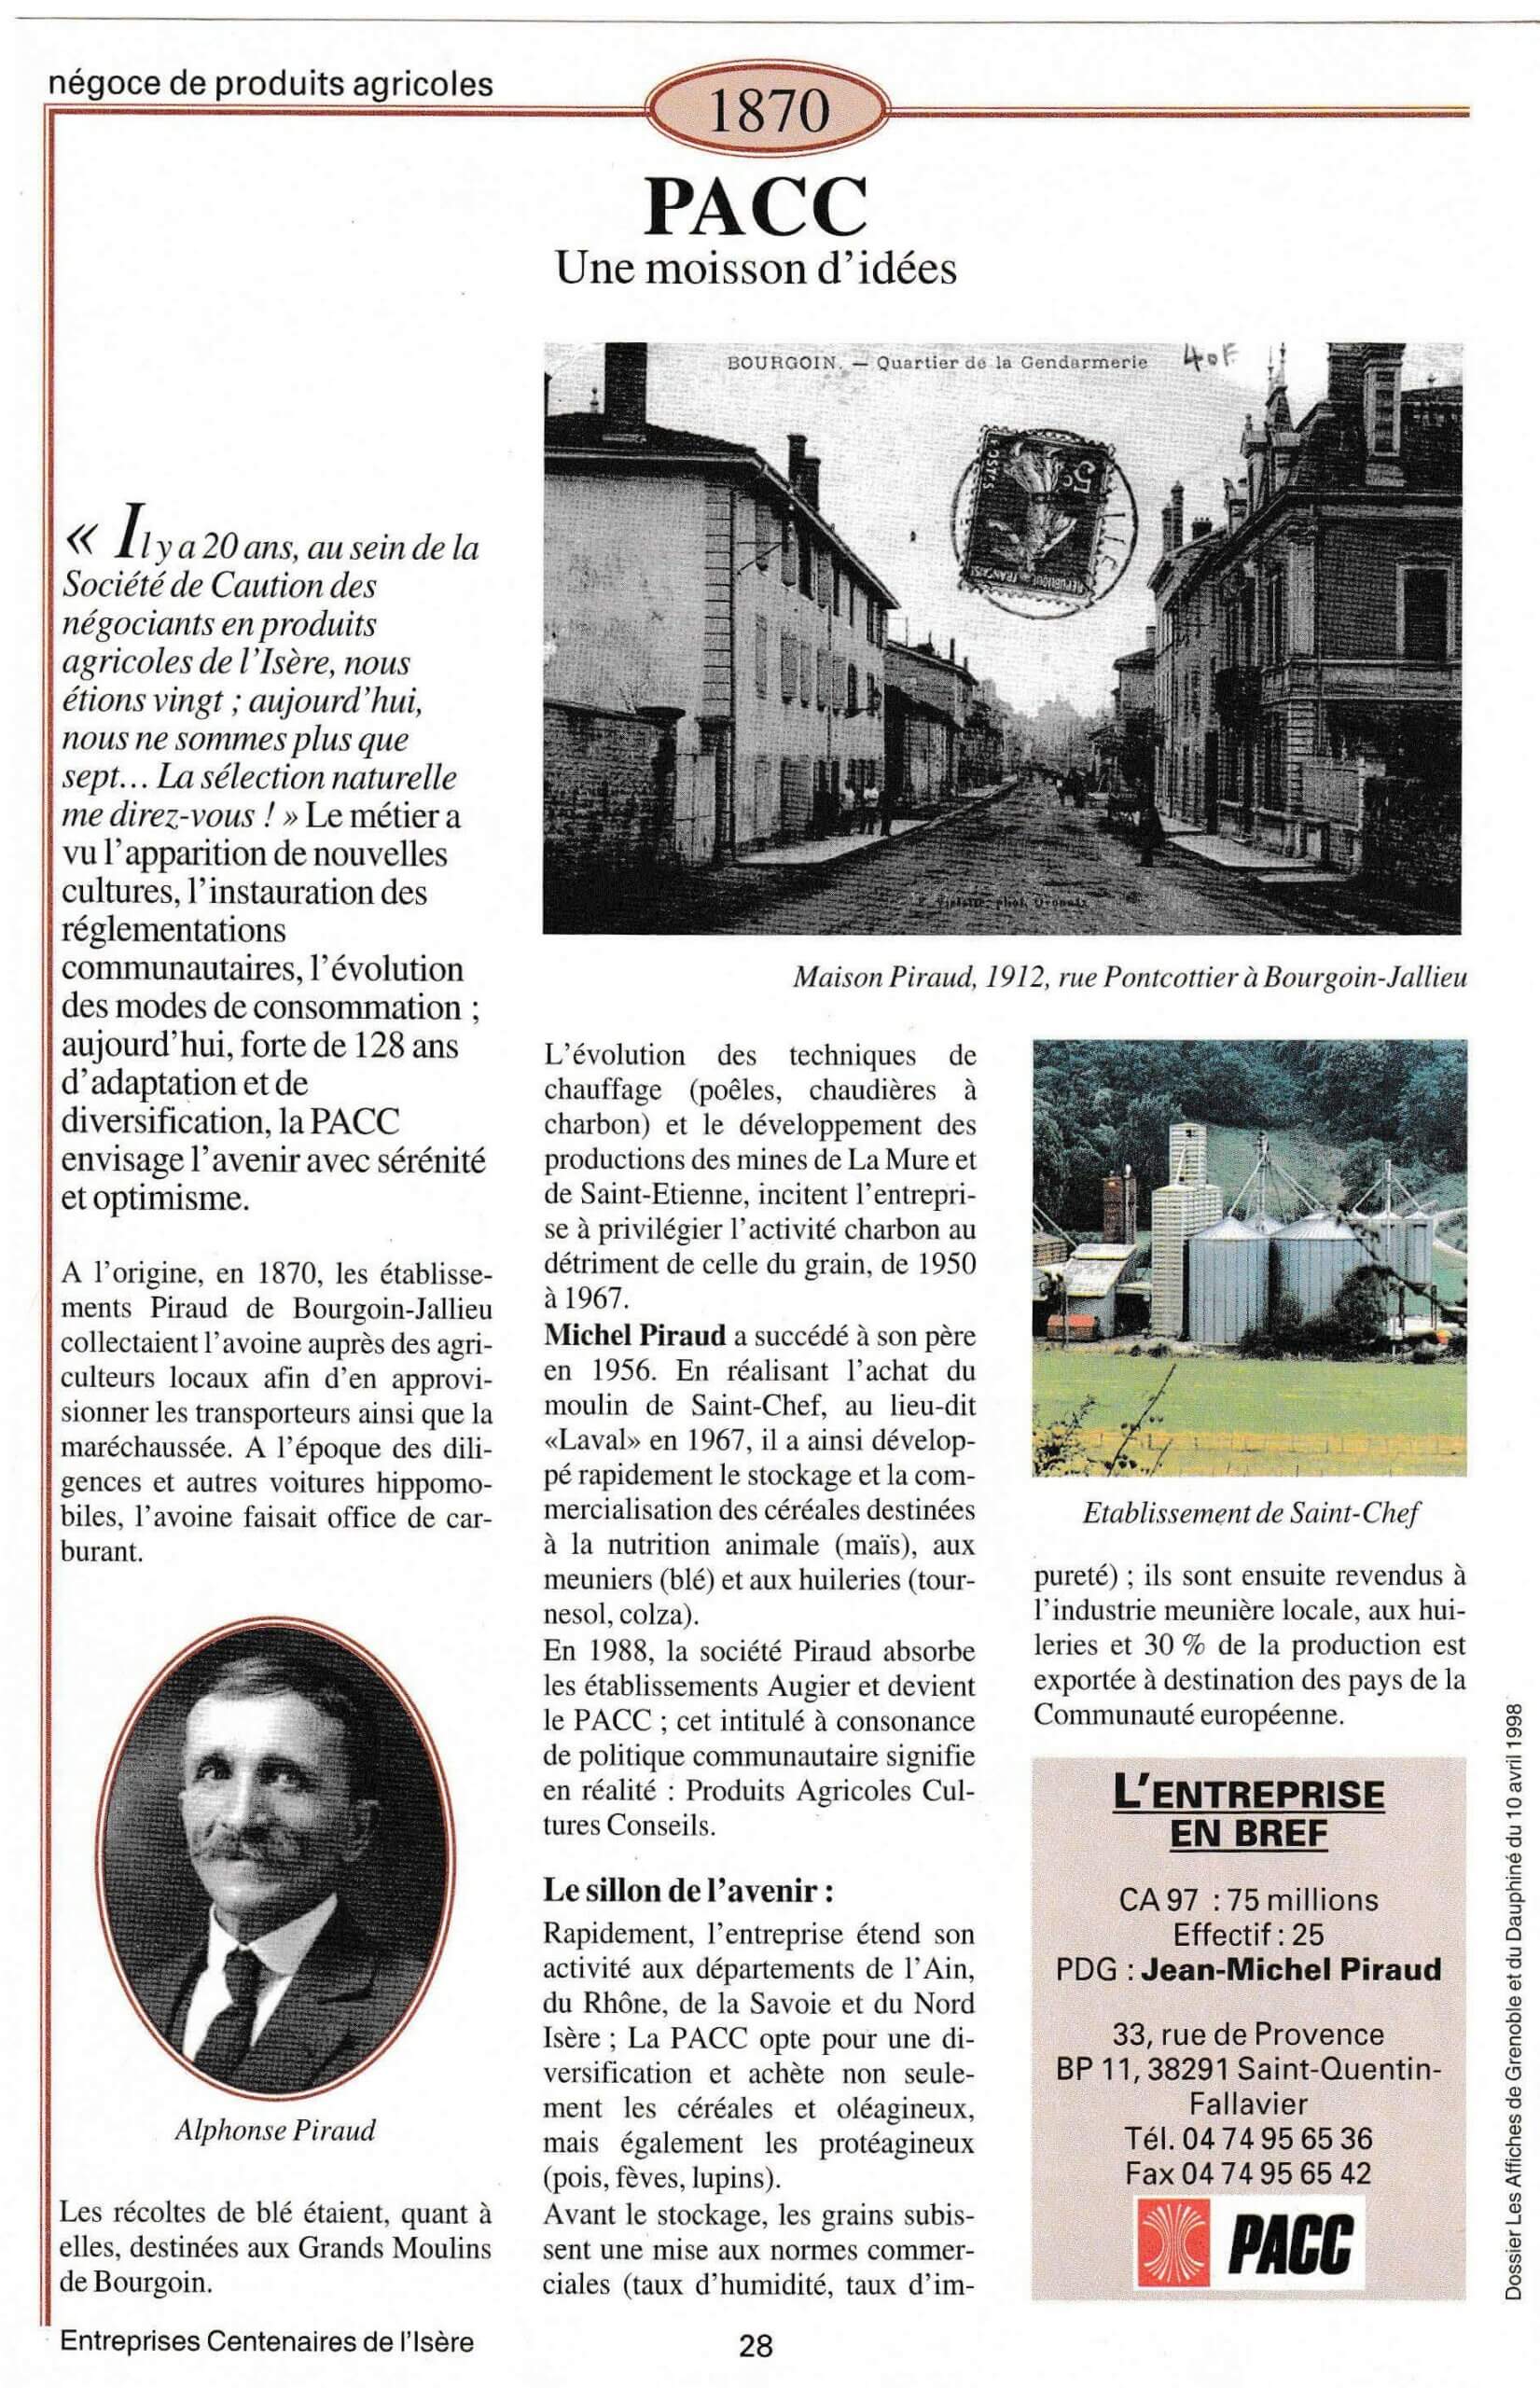 ARaymond - fiche du supplément "Entreprises centenaires en Isère", publié par Les affiches de Grenoble et du Dauphiné, juin 1998.